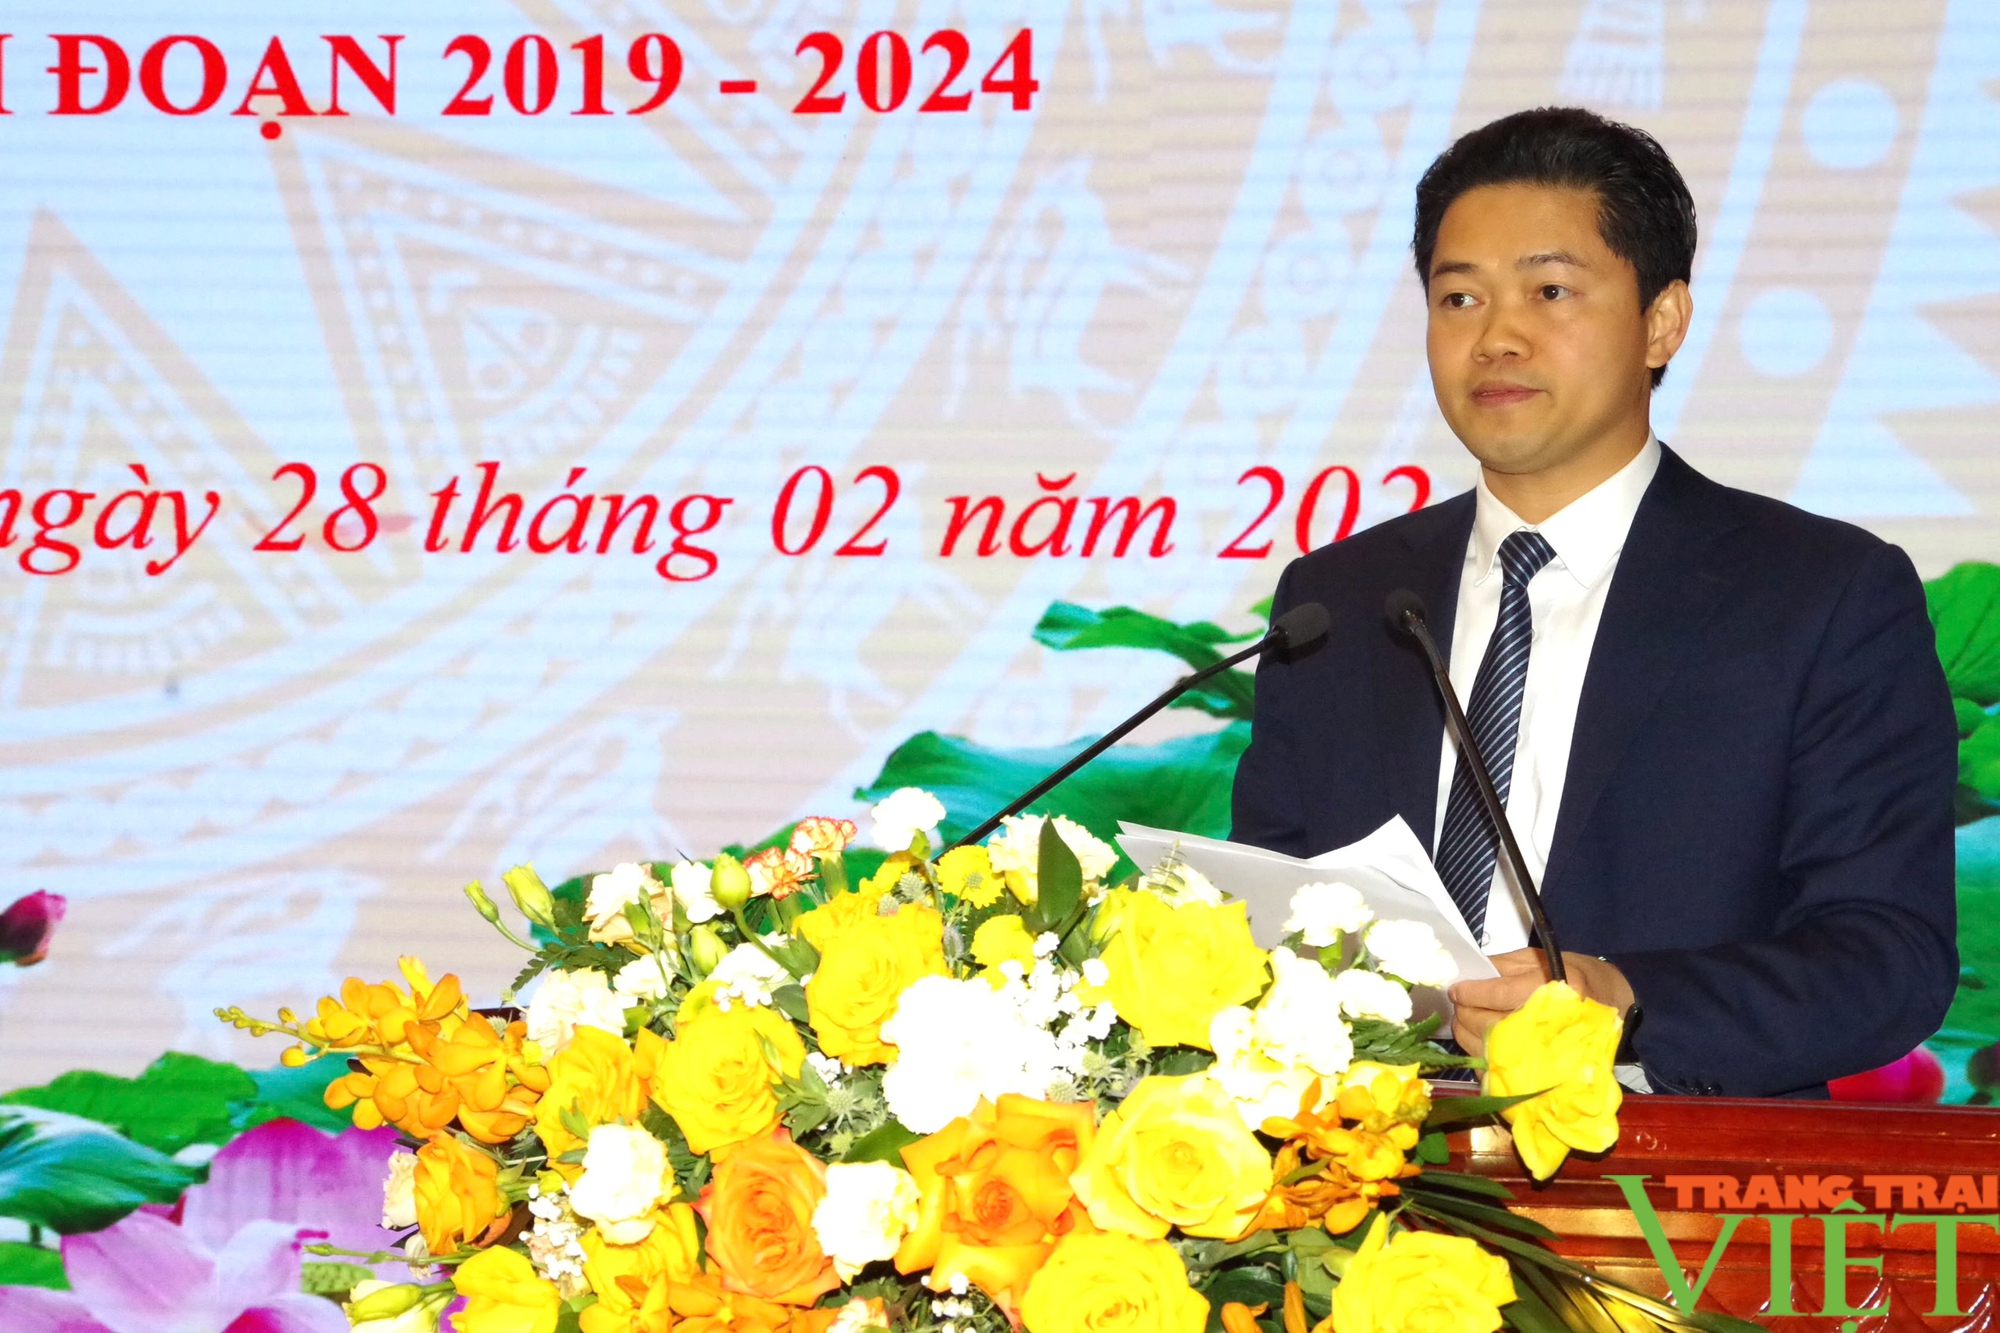 Lai Châu: Sơ kết 5 năm thực hiện Ngày Biên phòng toàn dân 2019 - 2024- Ảnh 3.